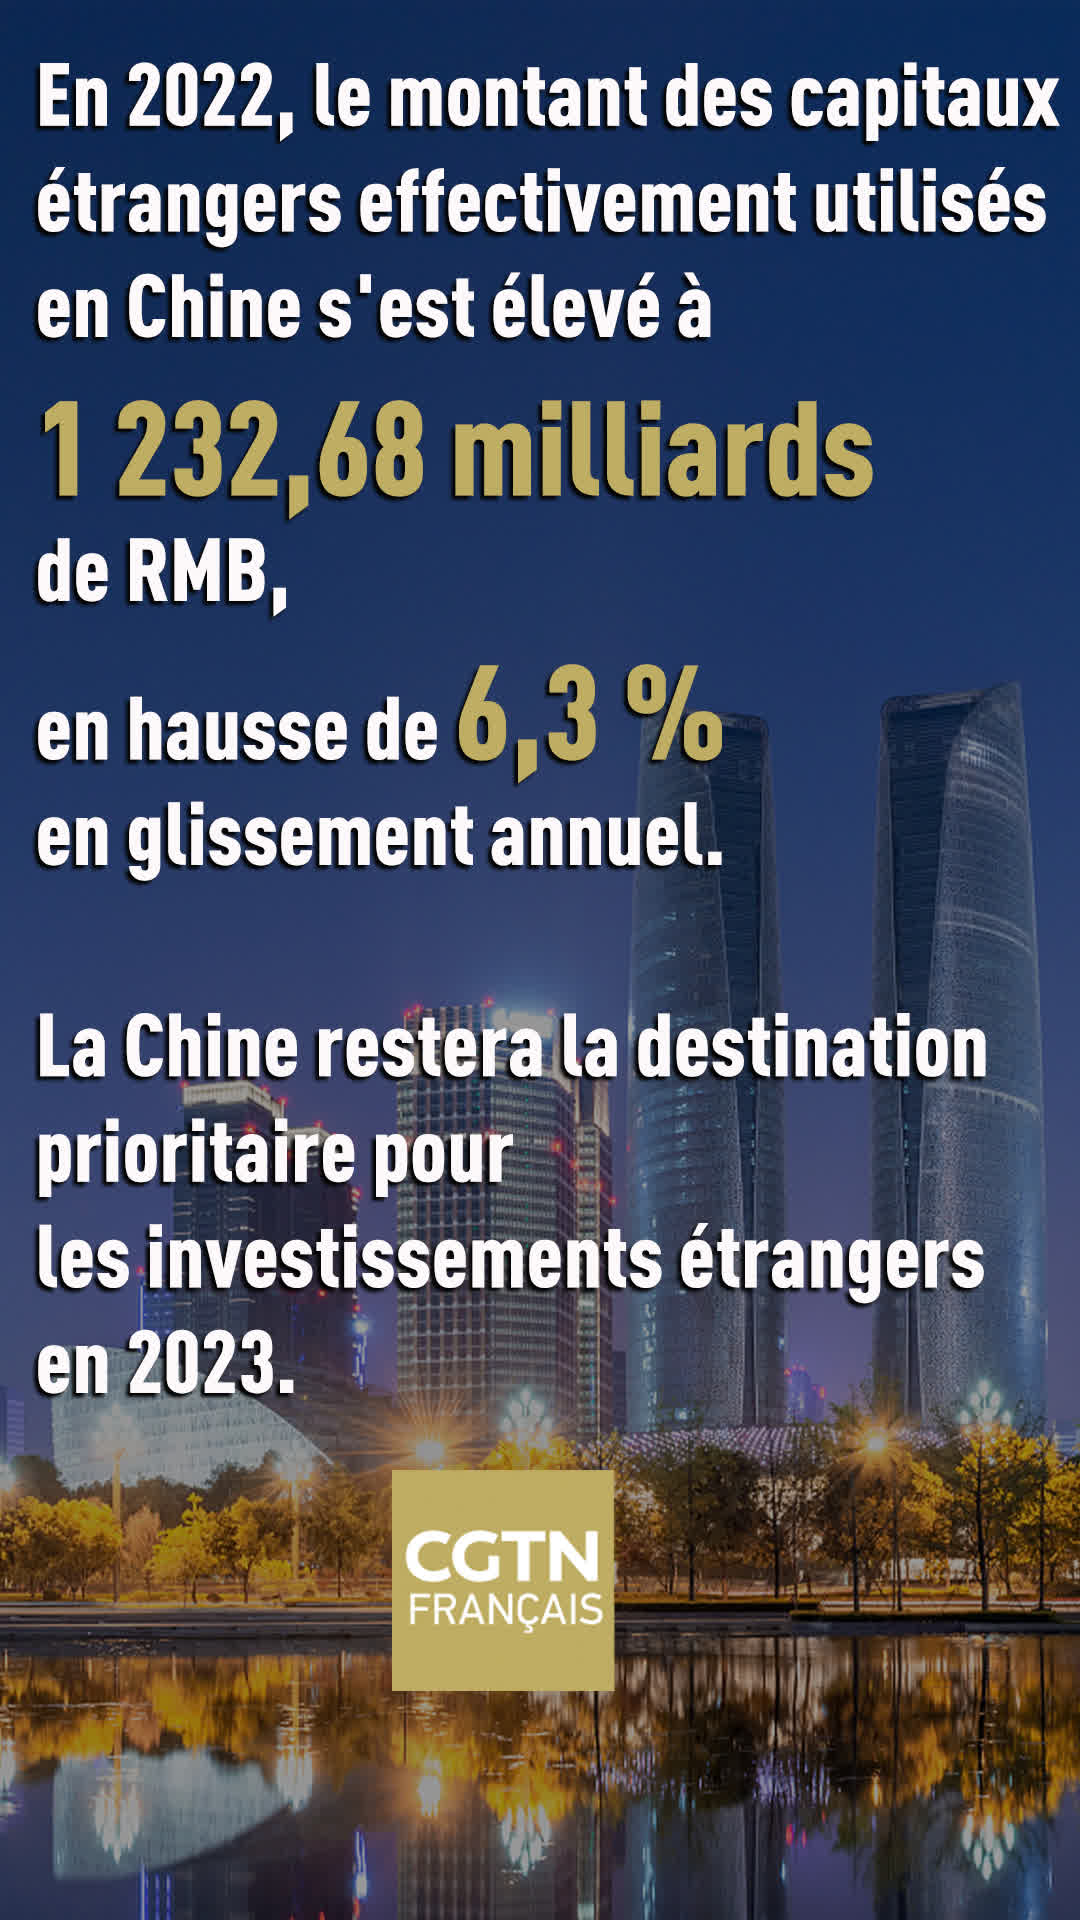 La Chine reste la destination prioritaire pour les investissements étrangers en 2023